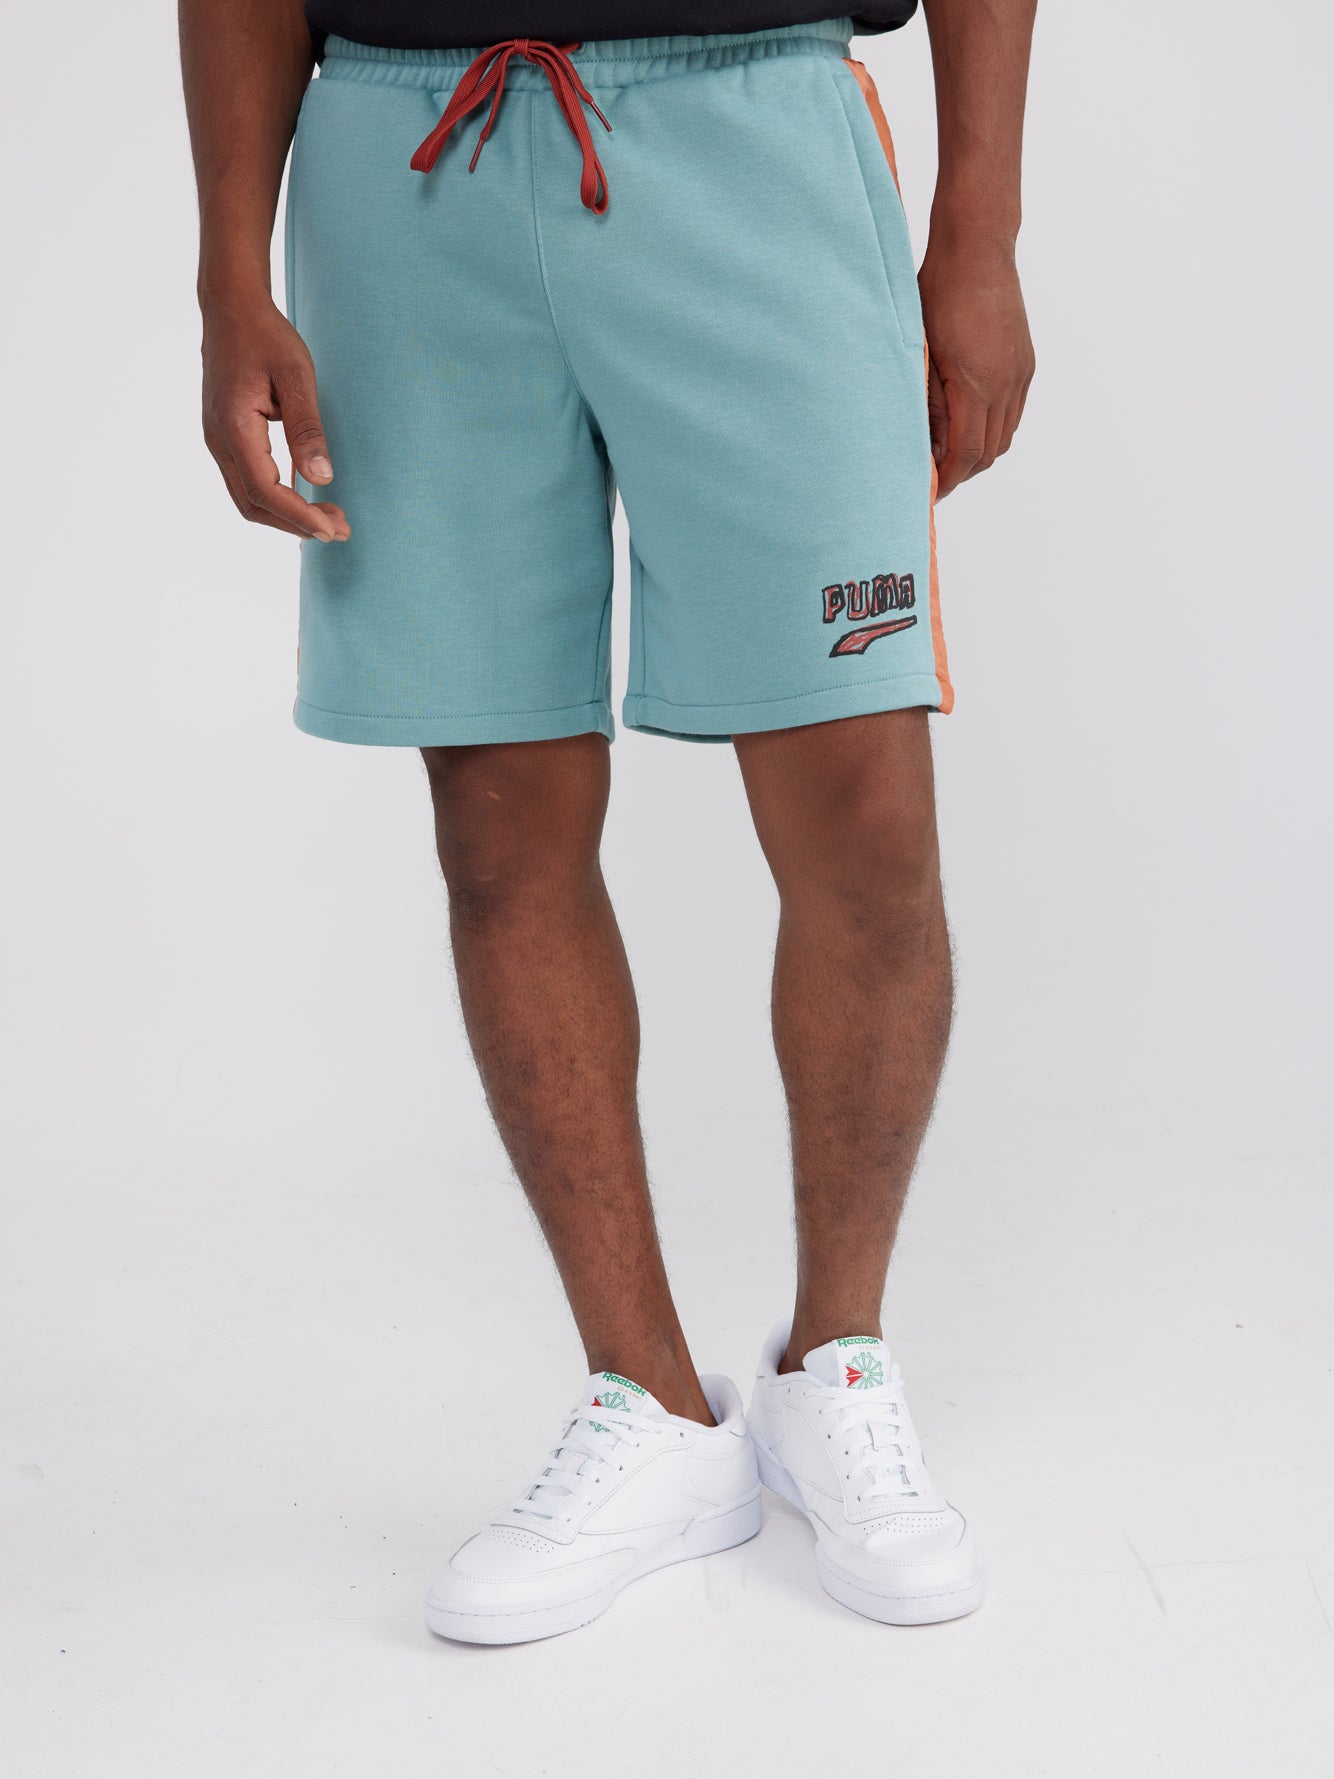 מכנסיים קצרים עם הדפס לוגו גרפי- Puma|פומה